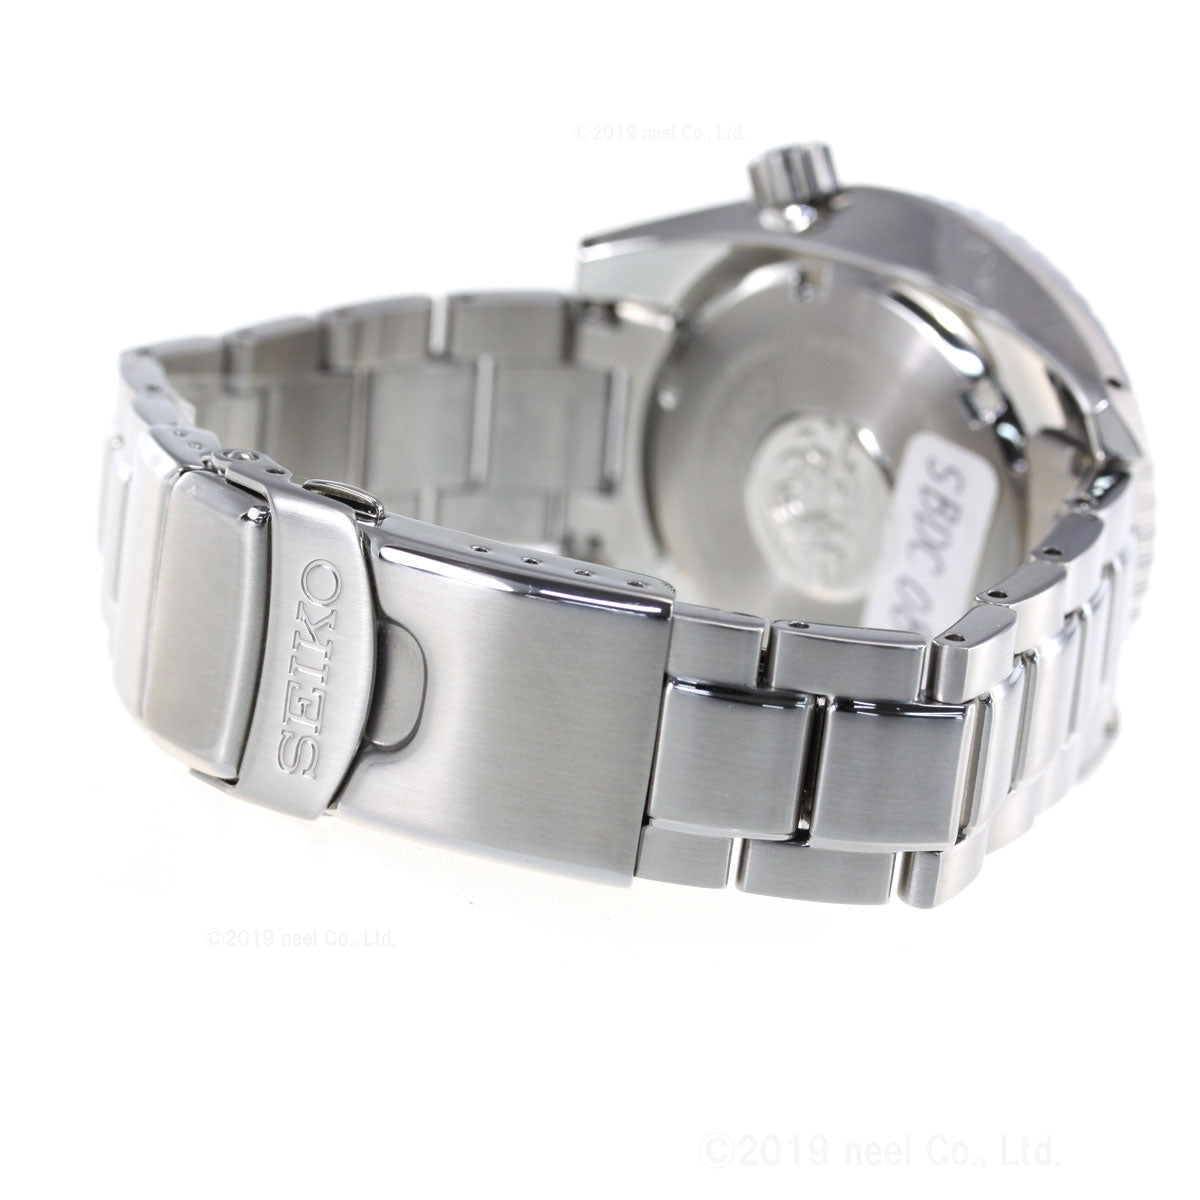 セイコー プロスペックス SEIKO PROSPEX ダイバースキューバ メカニカル 自動巻き コアショップ専用 腕時計 メンズ スモウ SUMO SBDC083